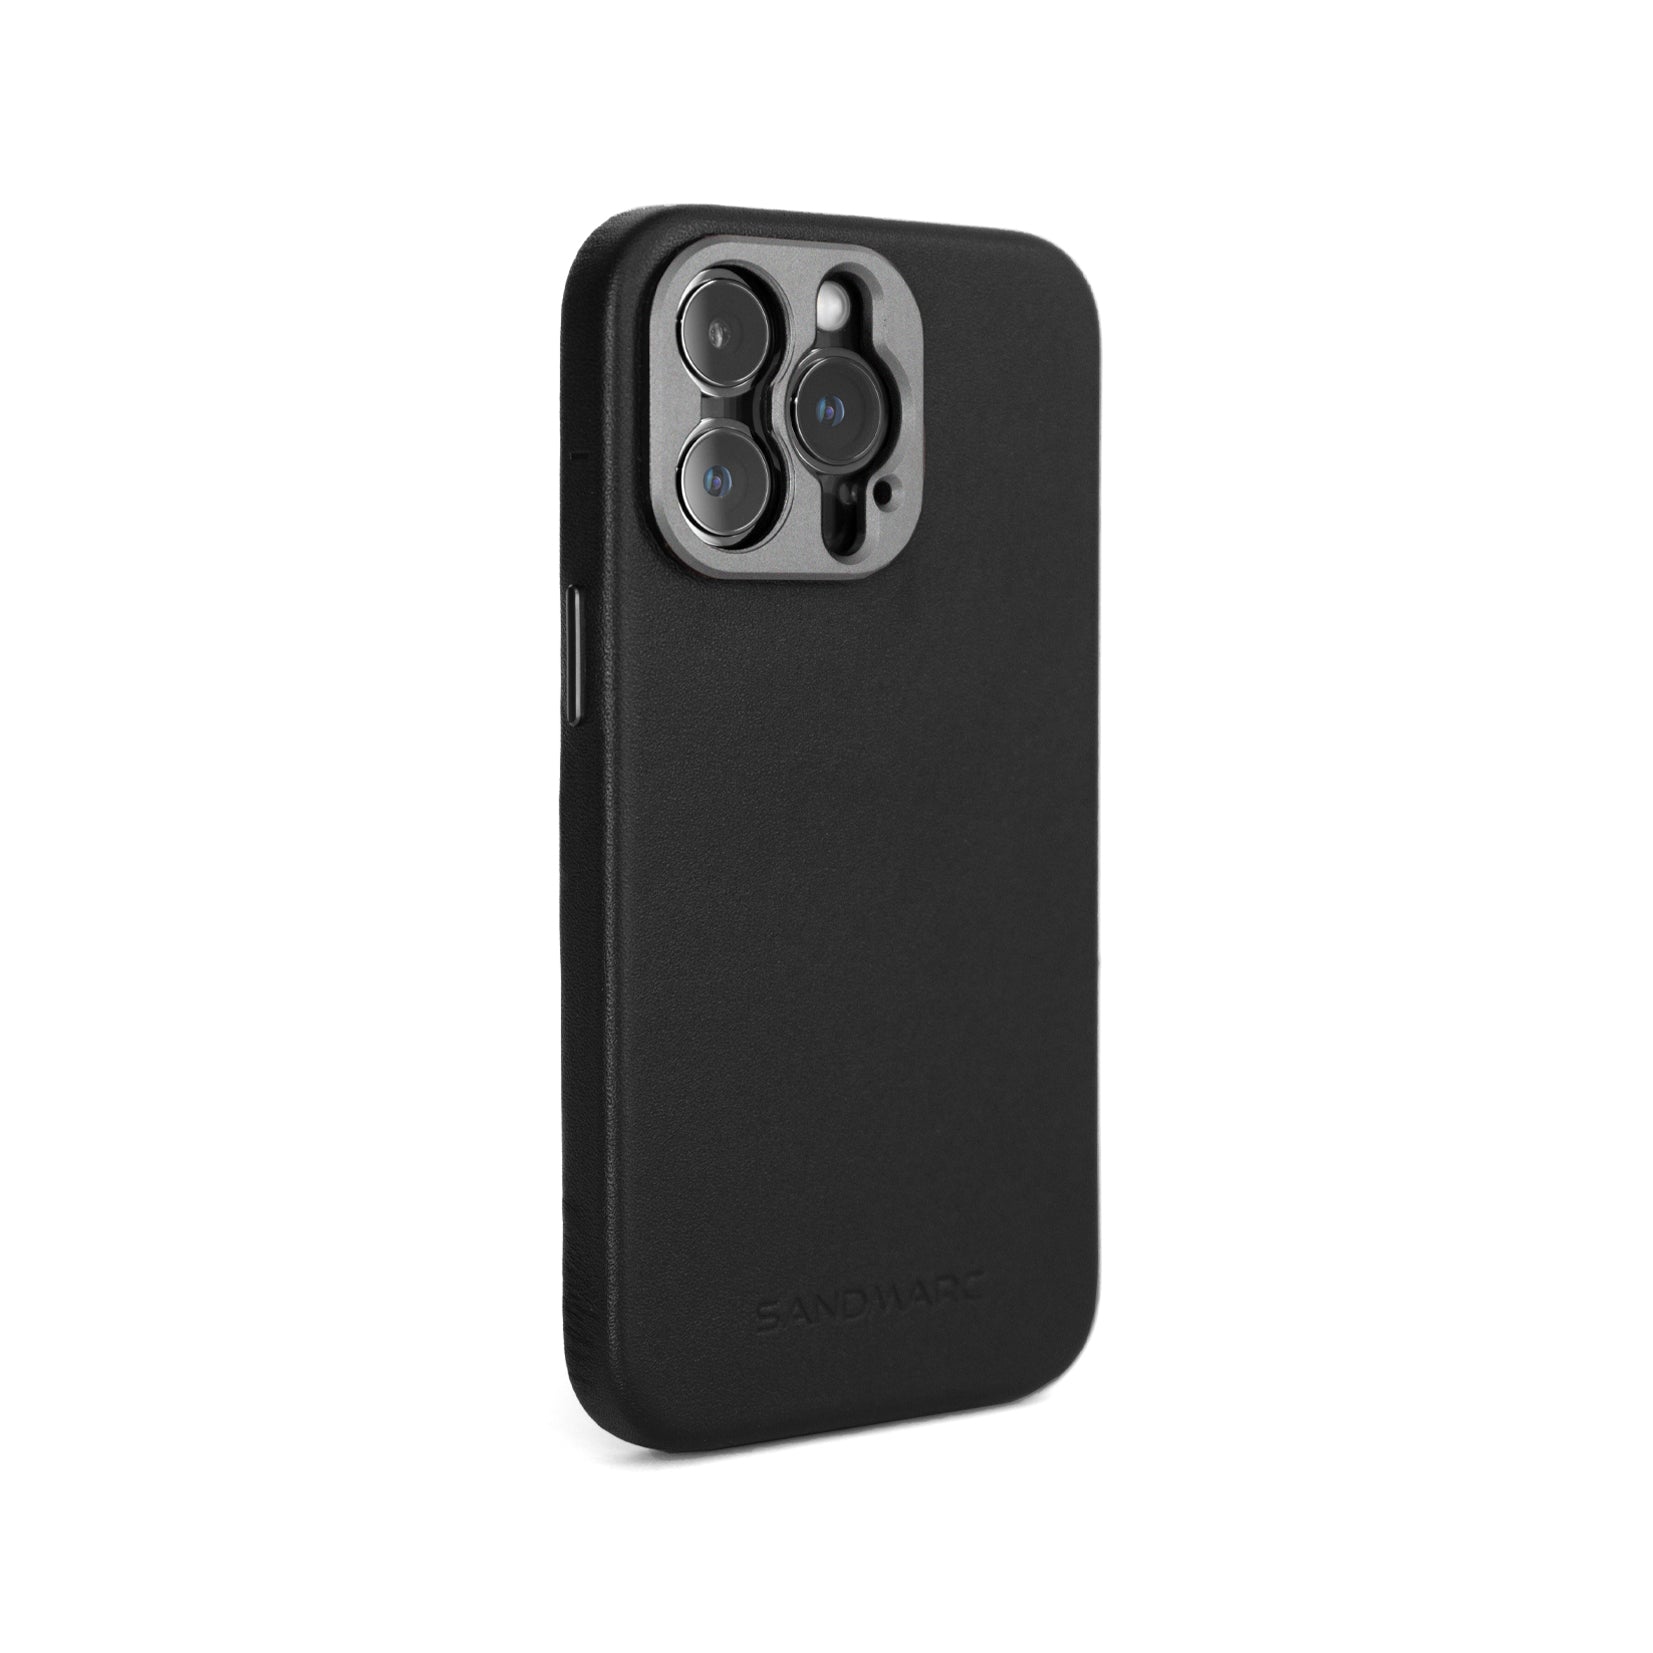 For designer iphone case/iphone cases/case iphone 13/phone case